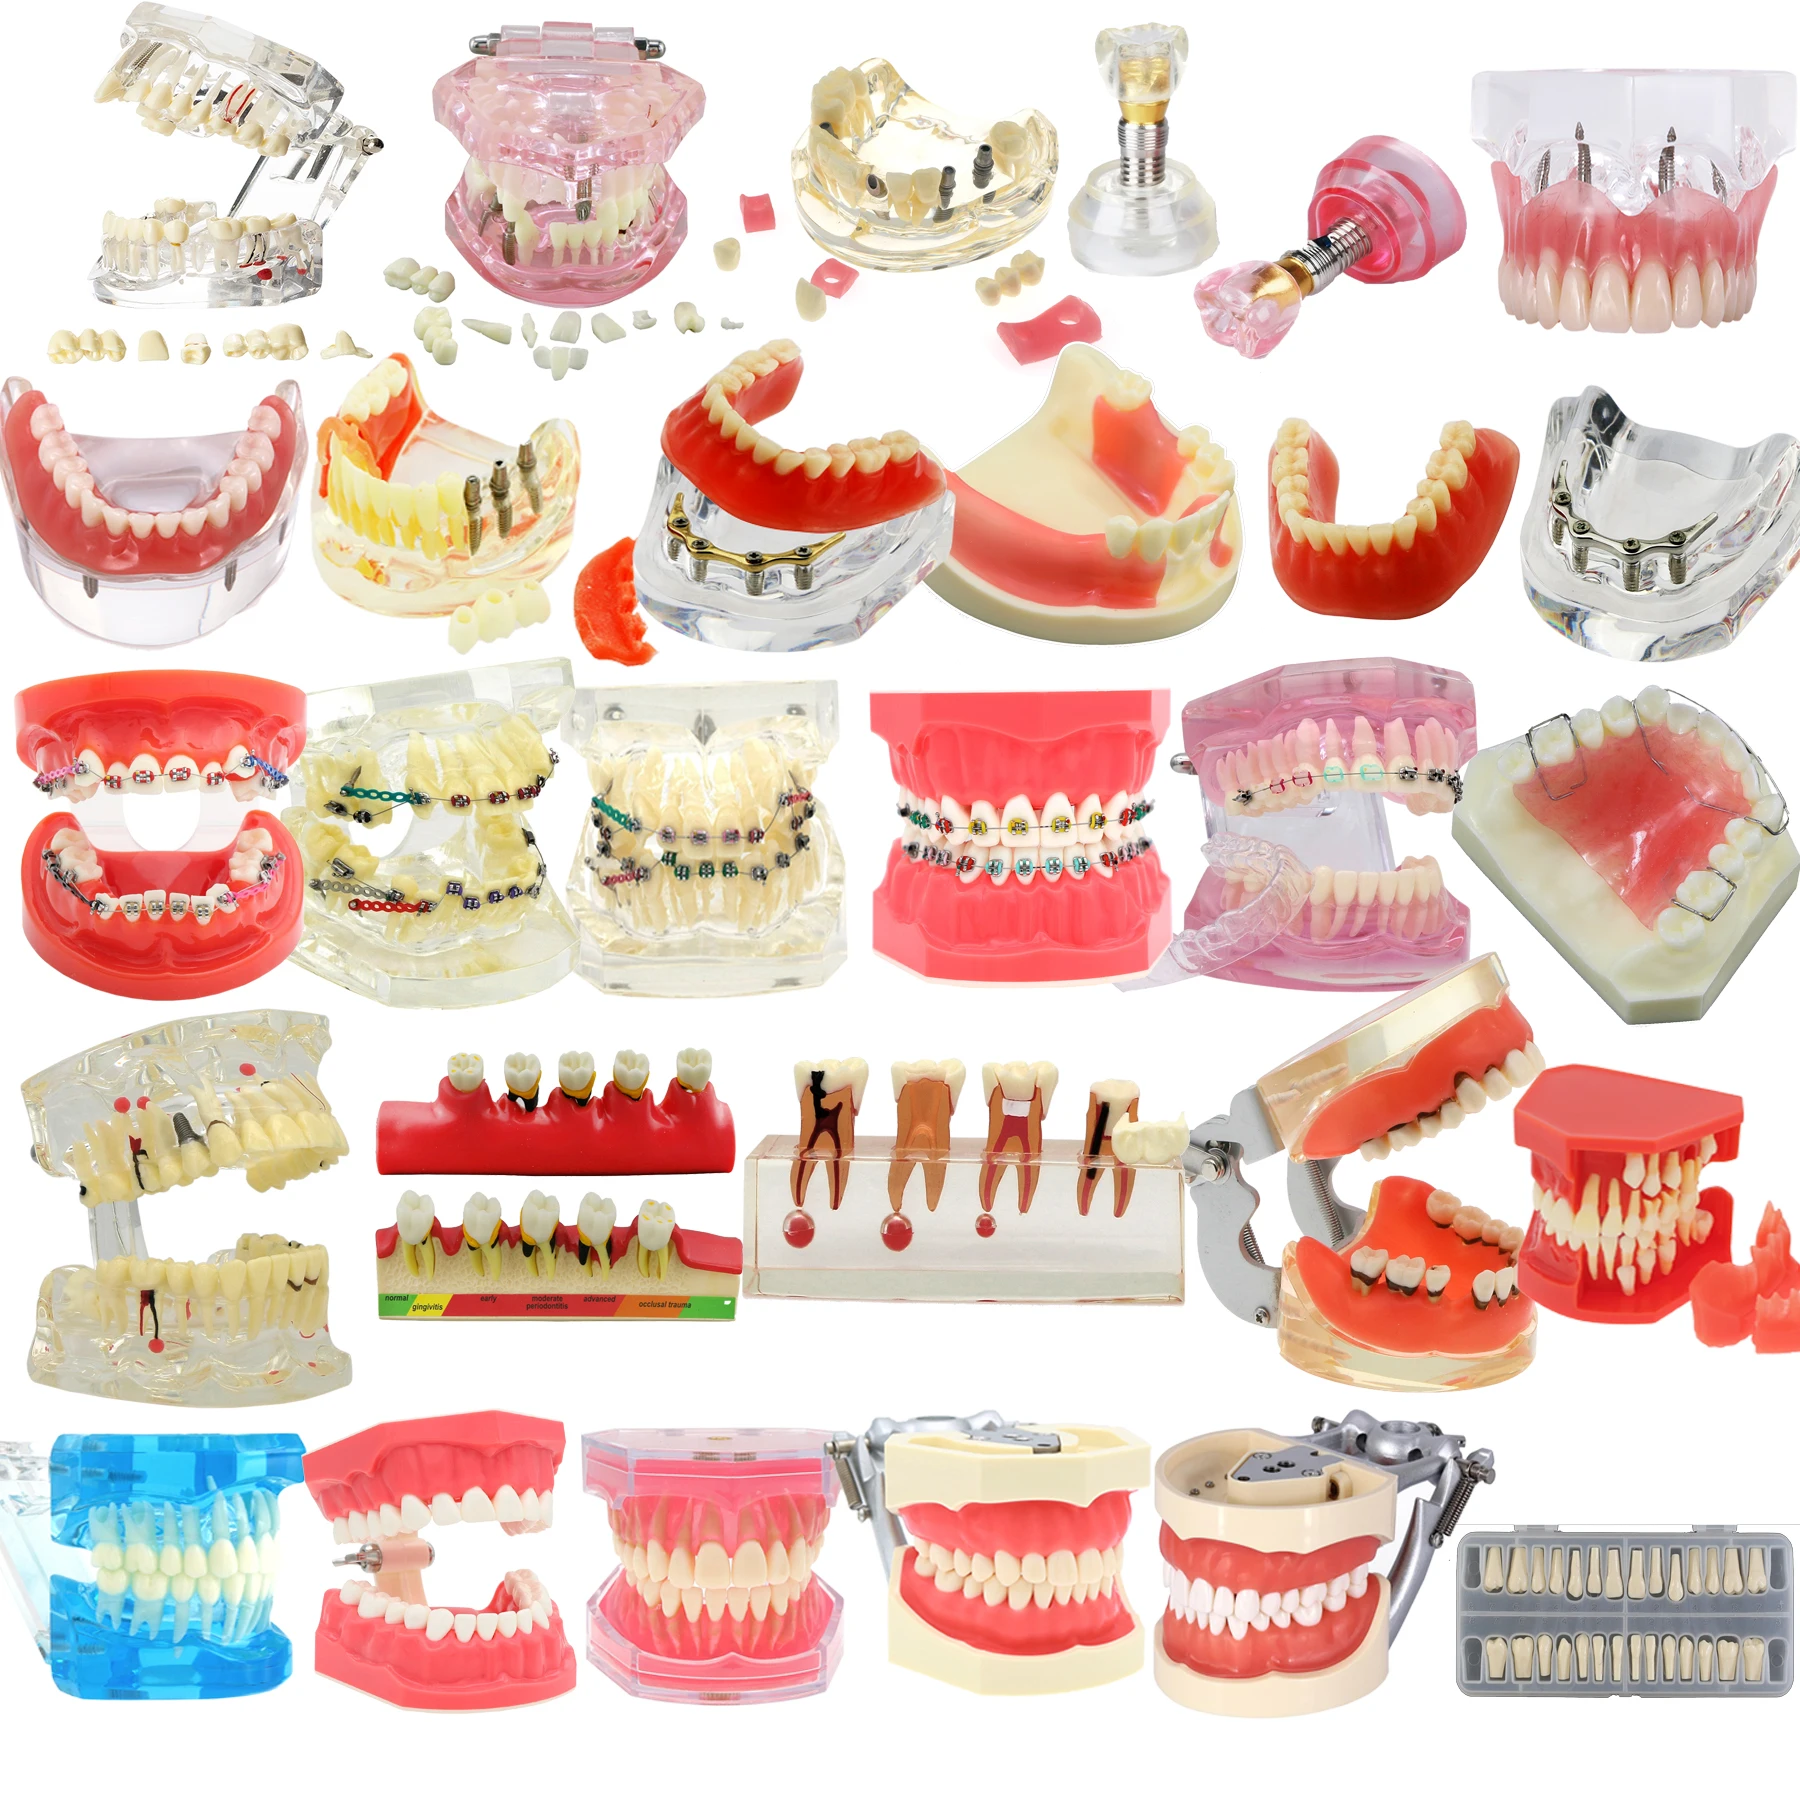 Dental Teeth Model Dental Teaching Model Standard Implants Models Orthodontic Model Dentistry Dentist  Demo Studying